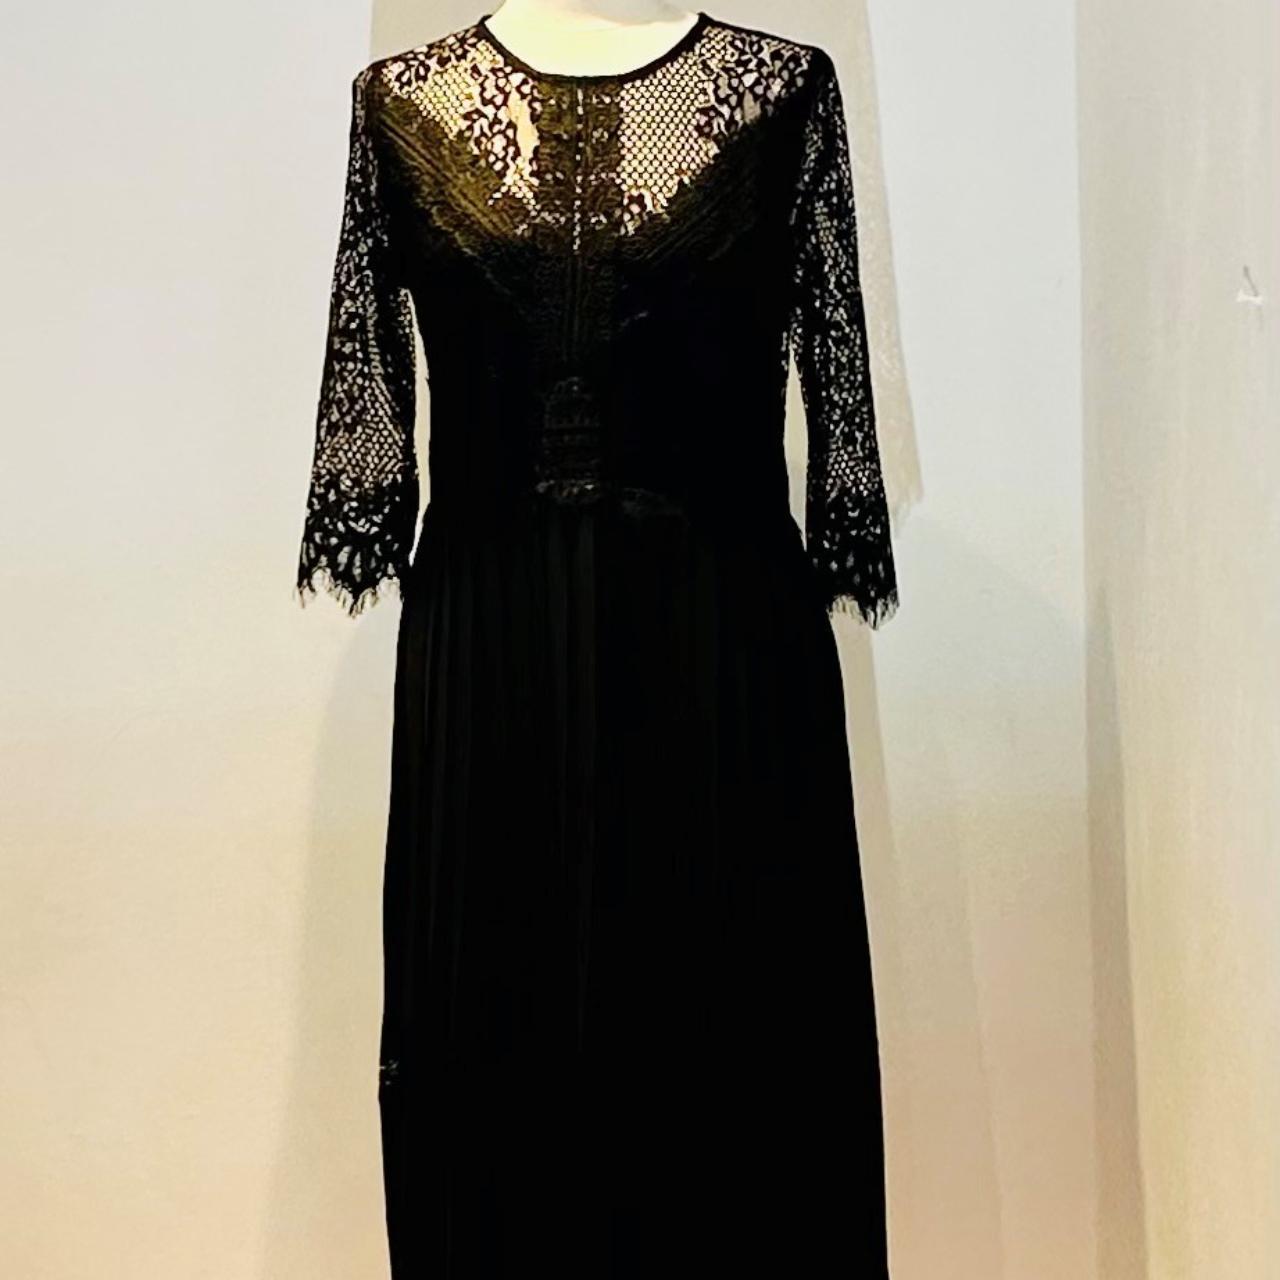 Black Zara Dress. Lovely dress, never worn. Zara... - Depop